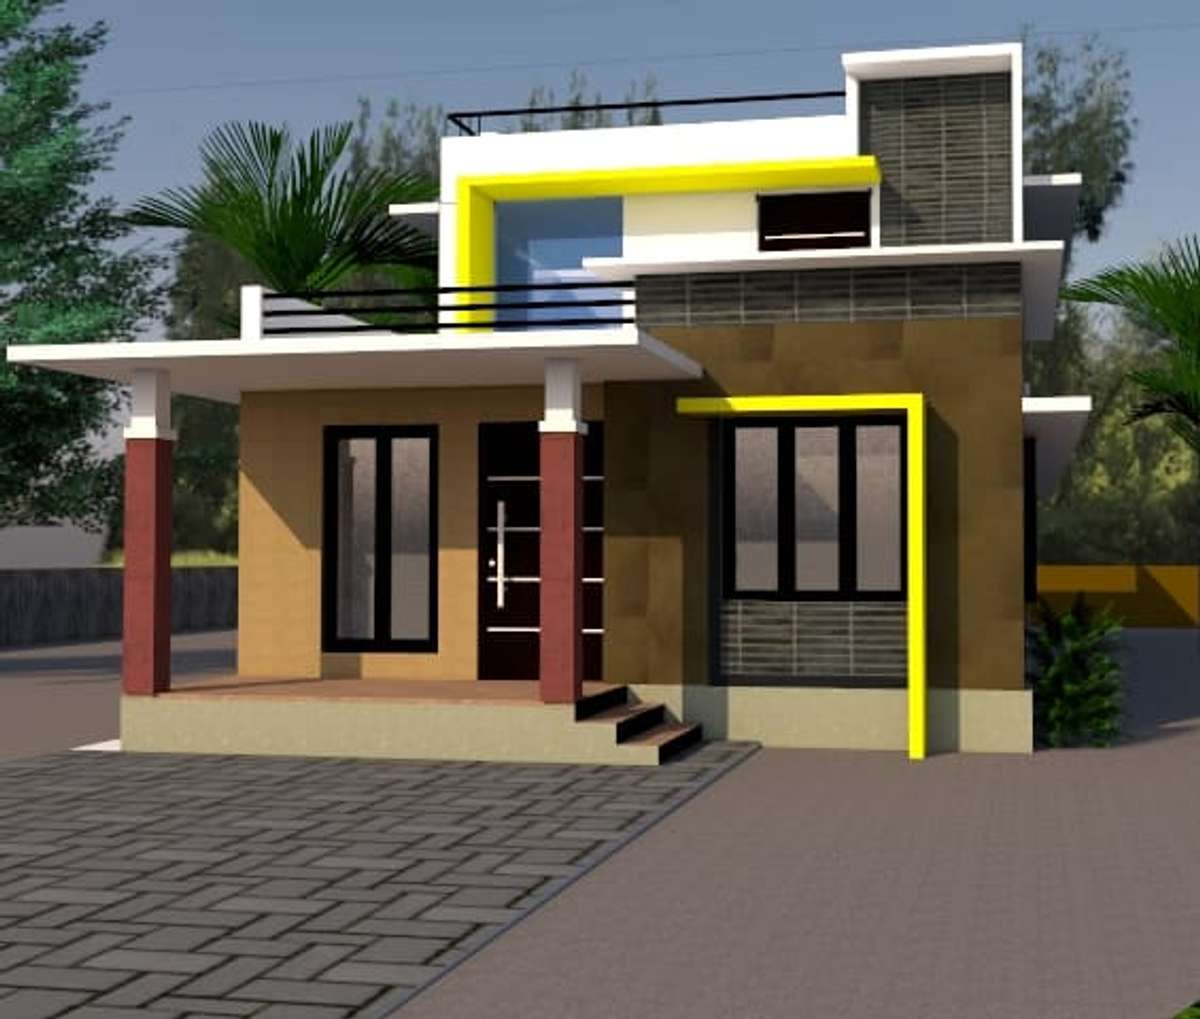 Designs by Civil Engineer Sajeesh Engineer, Thrissur | Kolo